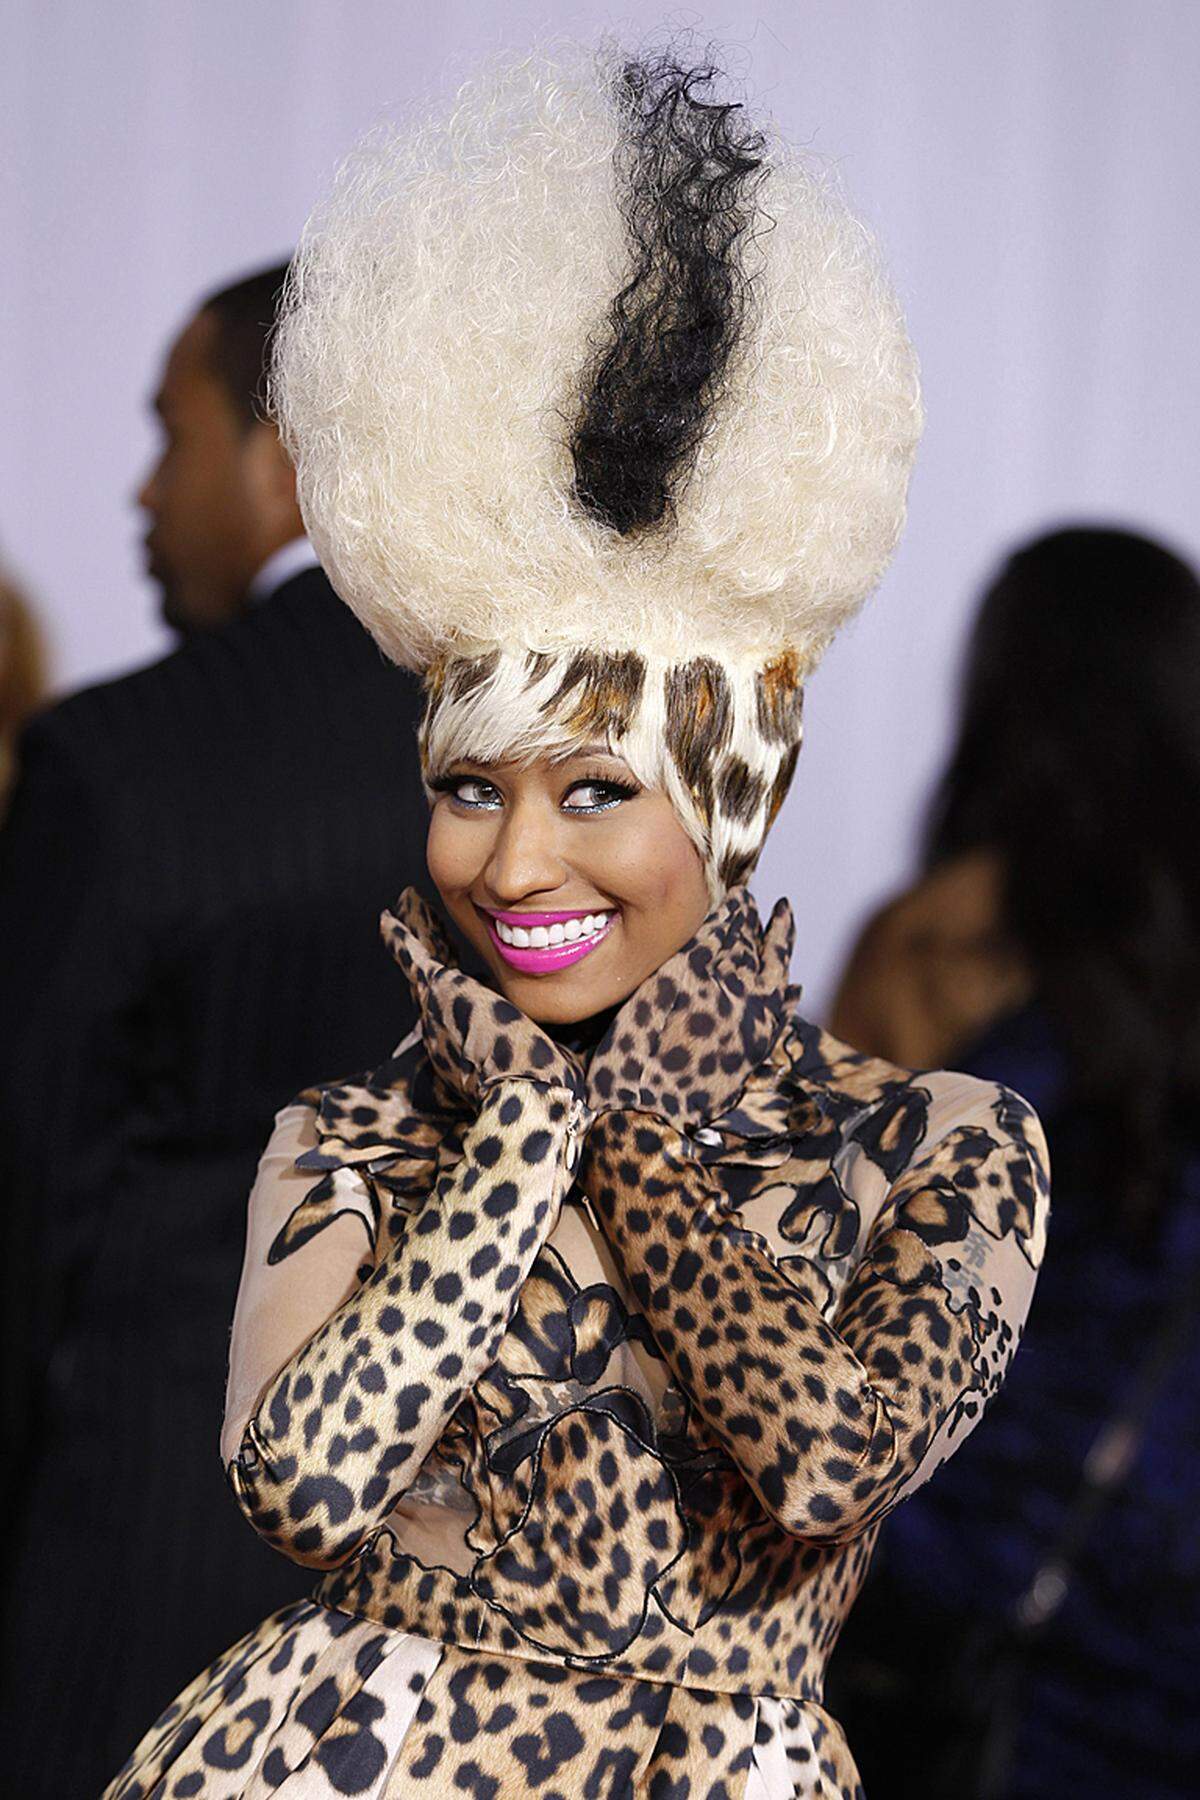 Die 28-Jährige besticht nicht nur durch Musikproduktionen, die nicht näher am Zeitgeist sein könnten, sondern auch durch schrille Outfits.Im Bild: Nicki Minaj im Tiger-Look bei den 53. Grammy Awards am 13. Februar in Los Angeles.